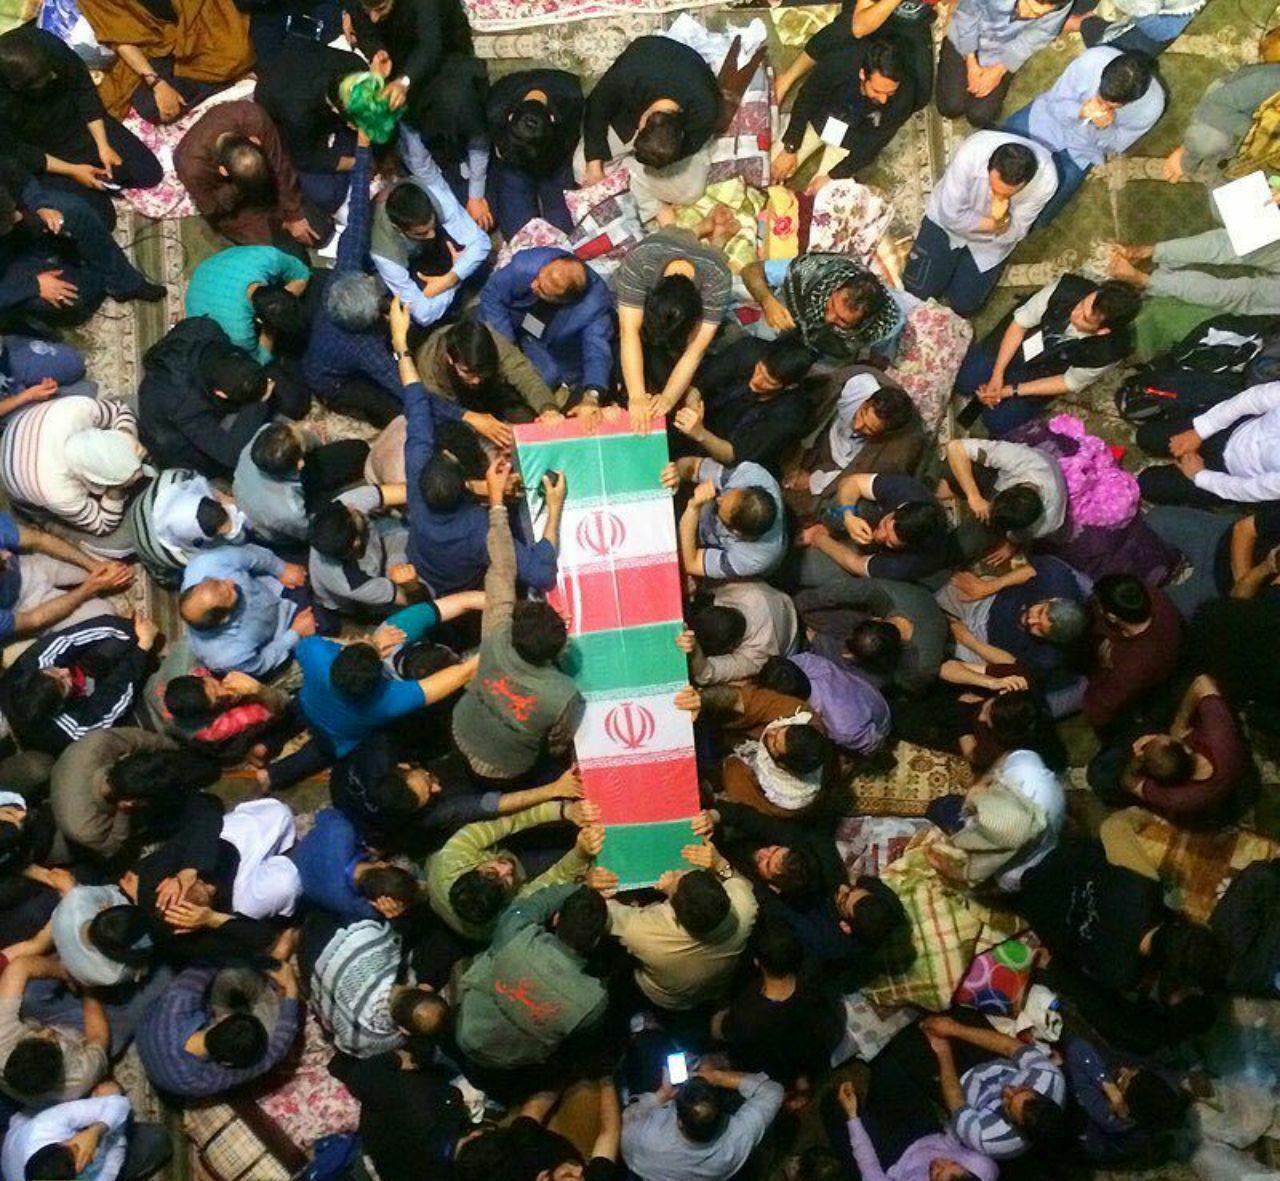 نشییع شهید گمنام در حاشیه مراسم اعتکاف دانشگاه تهران